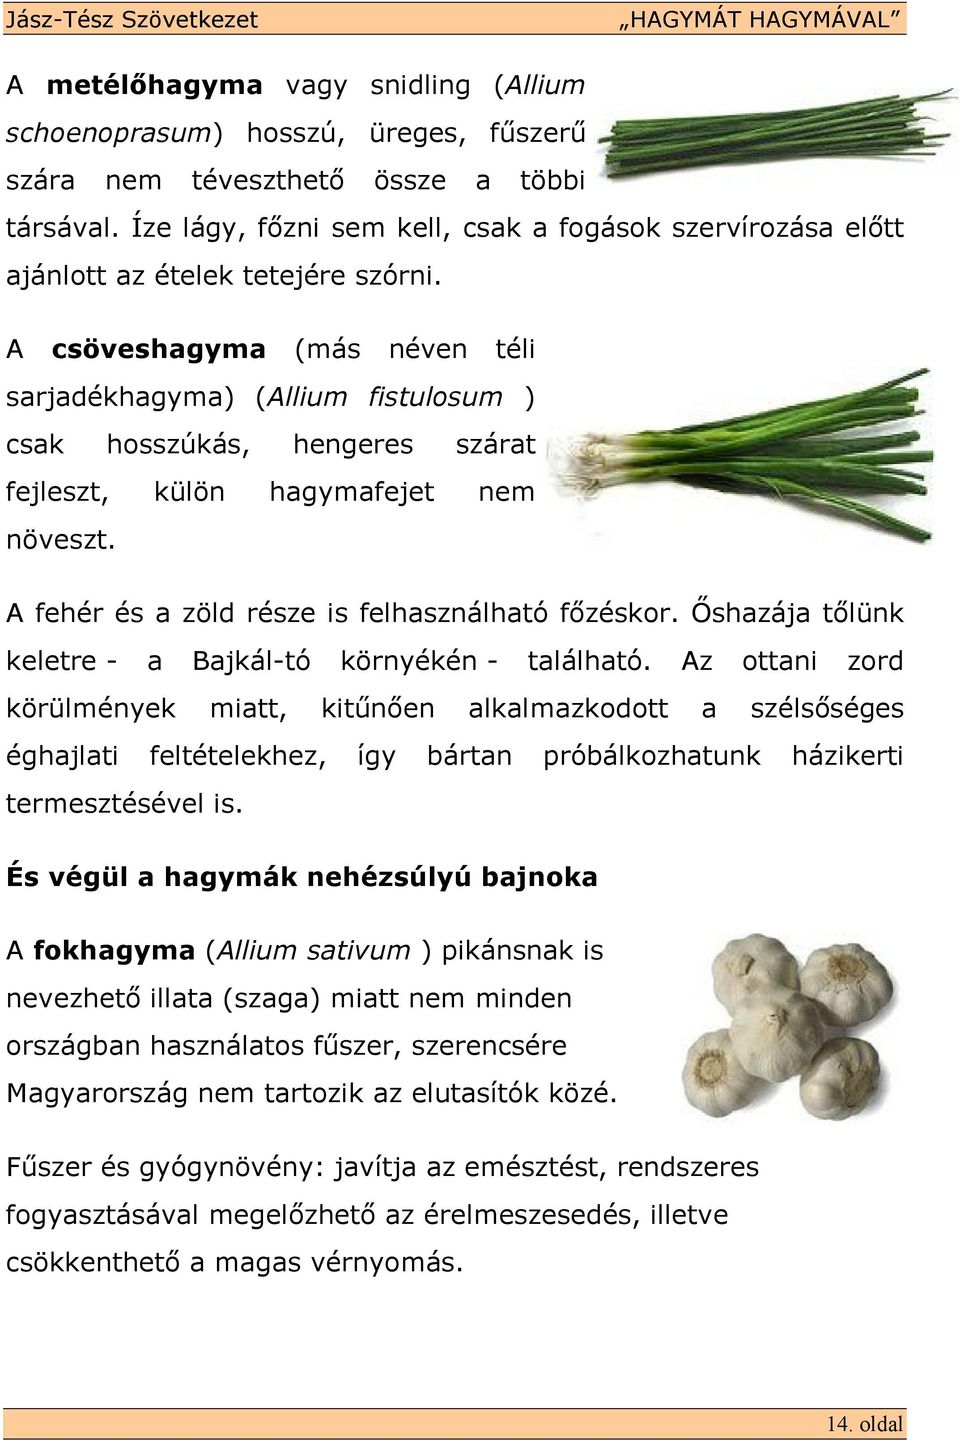 A csöveshagyma (más néven téli sarjadékhagyma) (Allium fistulosum ) csak hosszúkás, hengeres szárat fejleszt, külön hagymafejet nem növeszt. A fehér és a zöld része is felhasználható fızéskor.